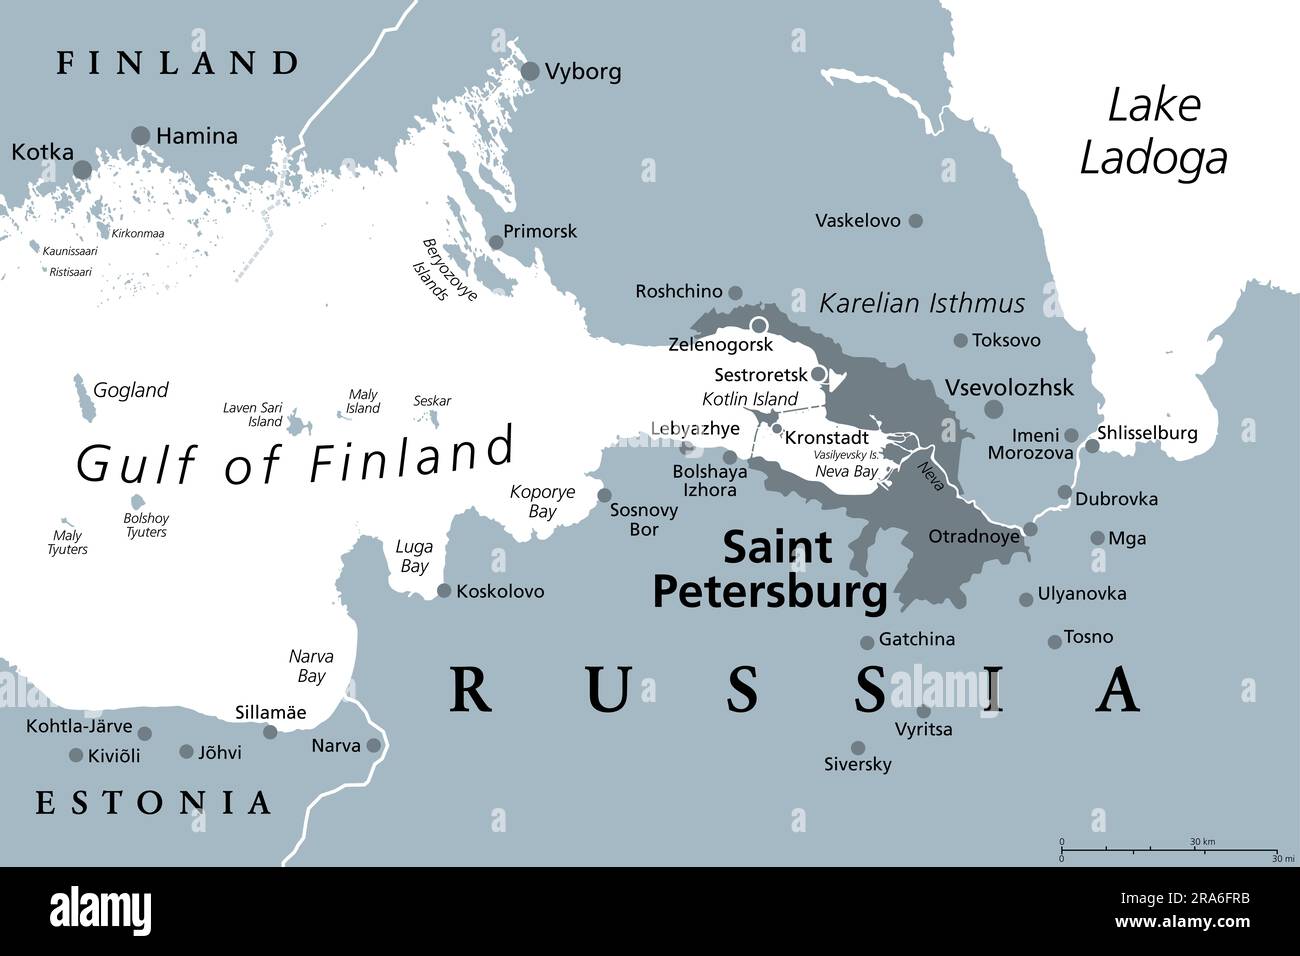 Région de Saint-Pétersbourg, carte politique grise. Deuxième plus grande ville de Russie, anciennement connue sous le nom de Petrograd et plus tard Leningrad. Situé sur la rivière Neva. Banque D'Images